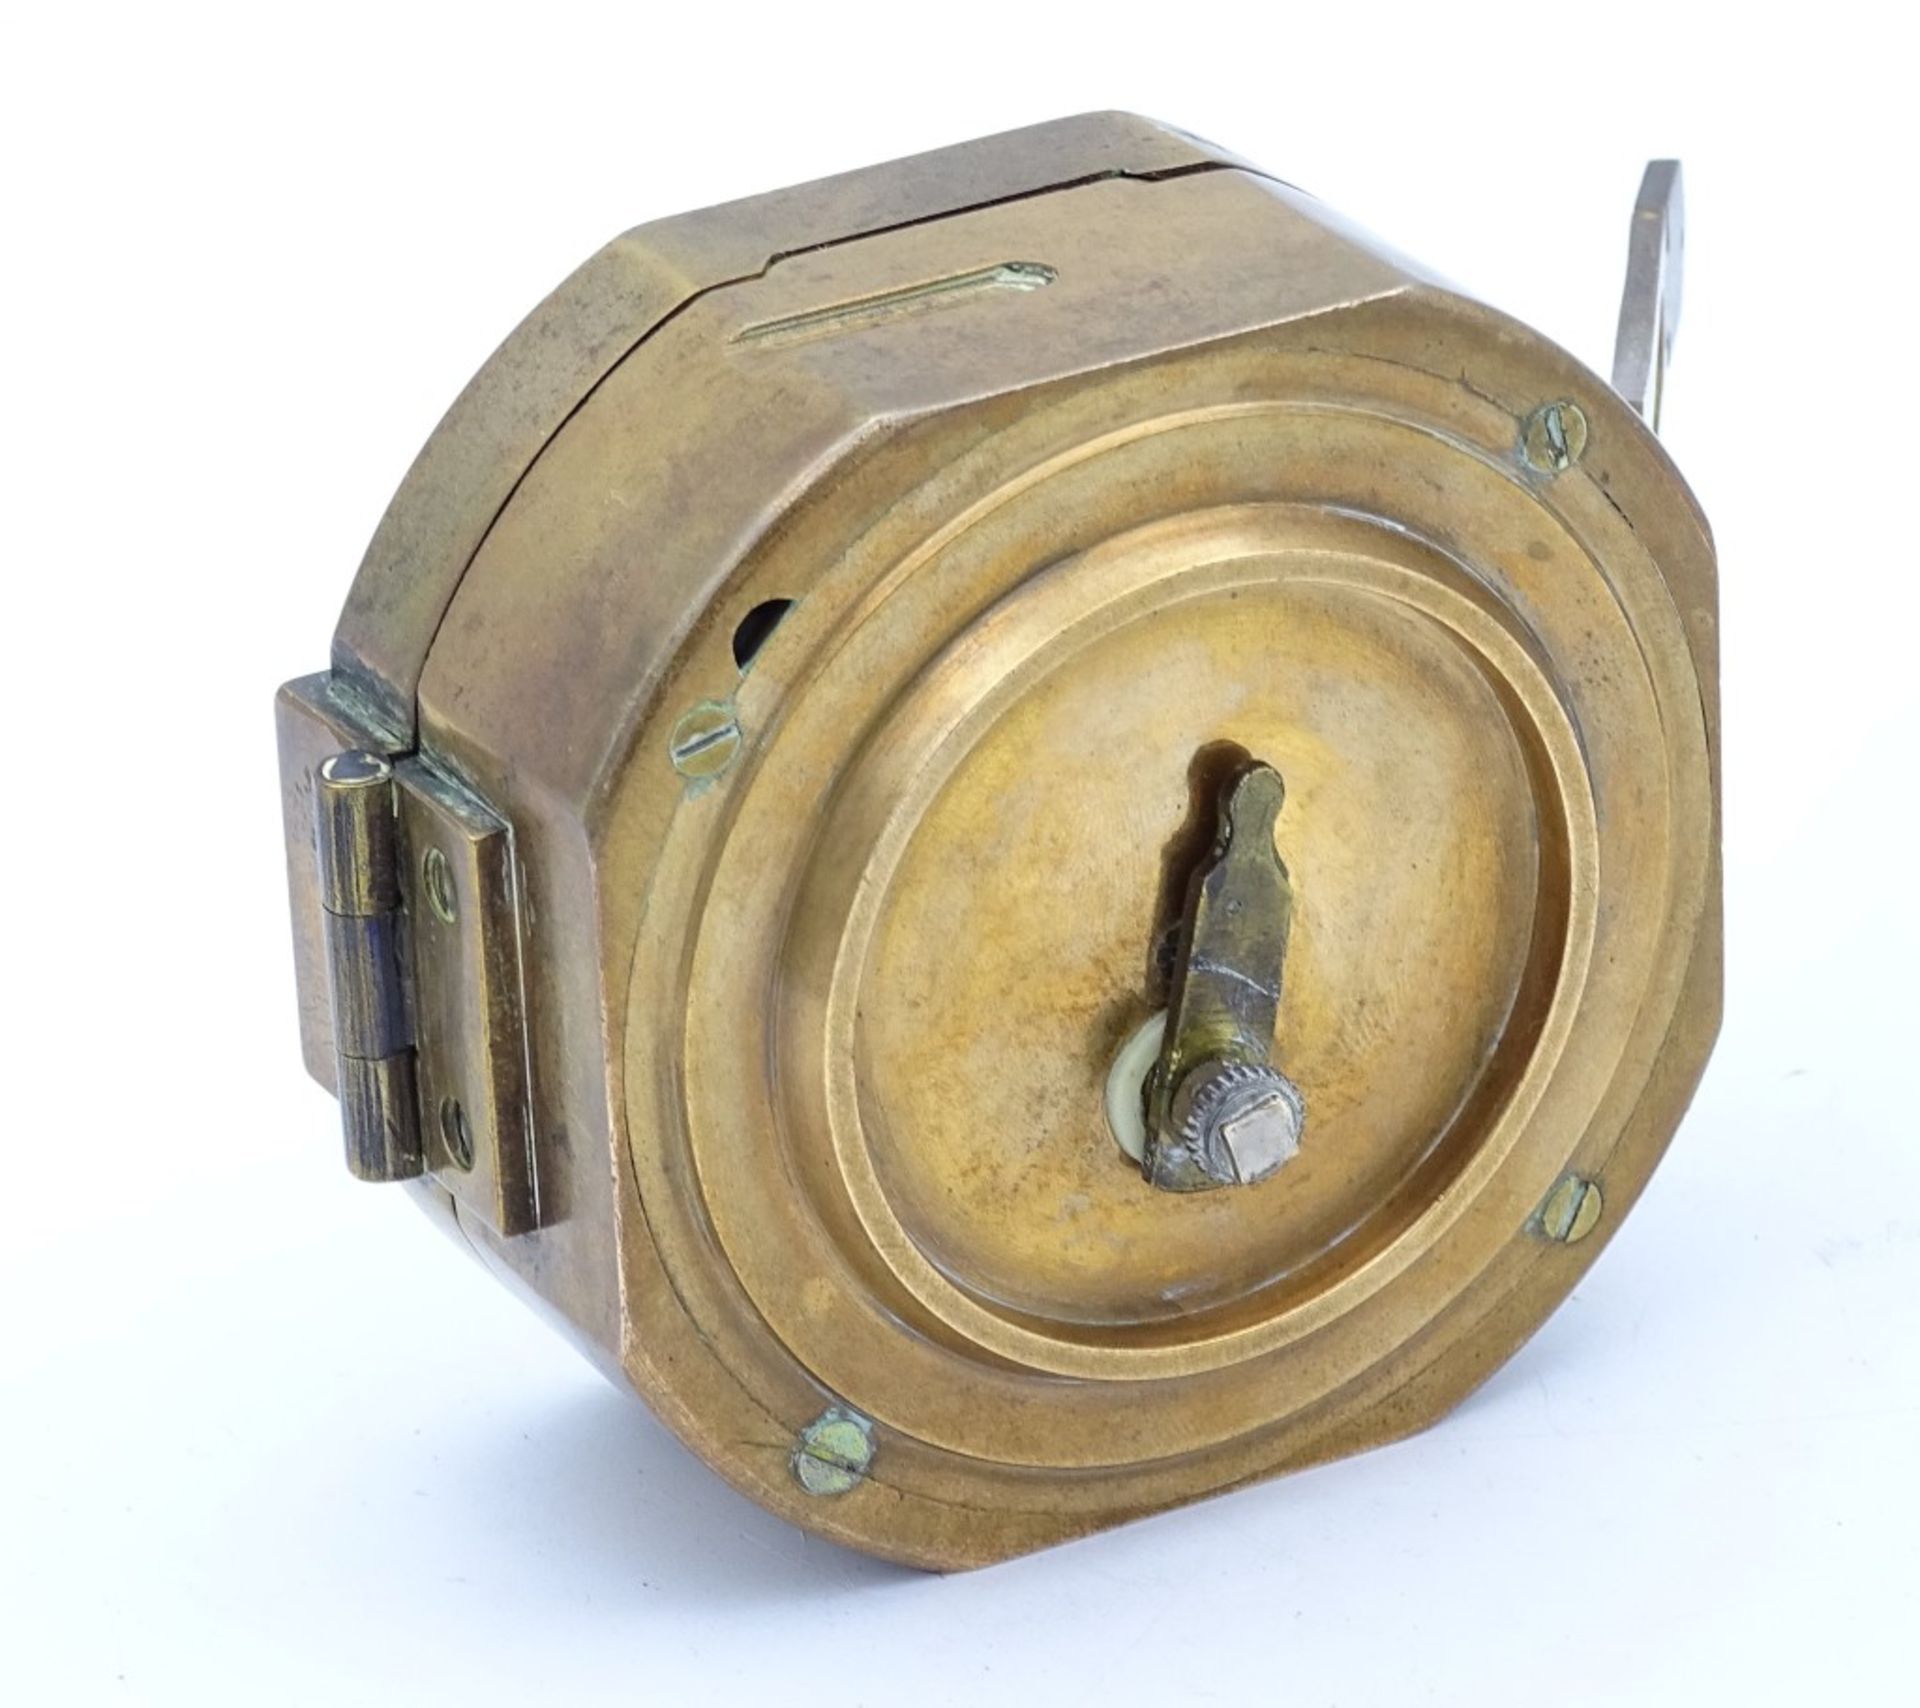 Kl.Kompass "Stanley London" Messinggehäuse mit innliegender Wasserwaage,7,0x8,0cm - Bild 4 aus 6